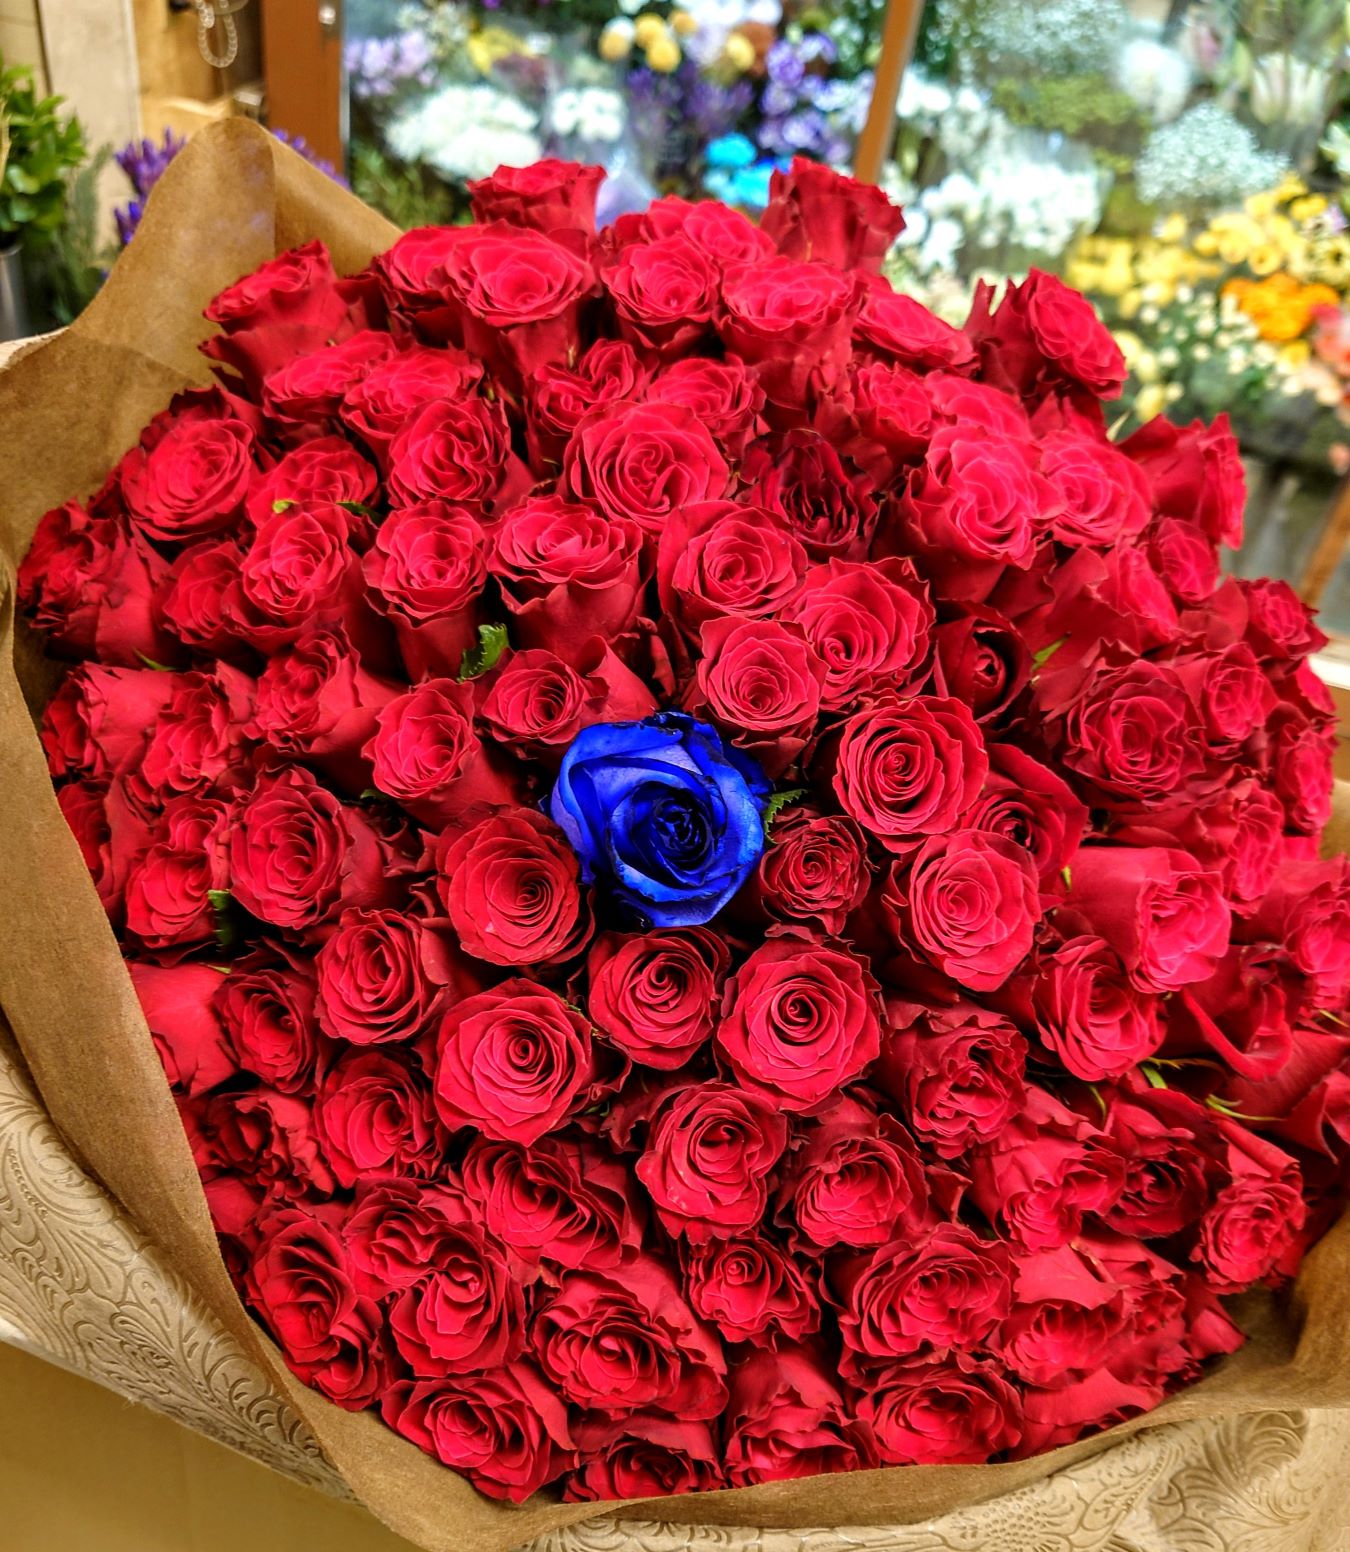 横浜みなとみらいへ赤いバラ107本 青いバラ1本の花束を配達しました。【横浜花屋の花束・スタンド花・胡蝶蘭・バルーン・アレンジメント配達事例1080】